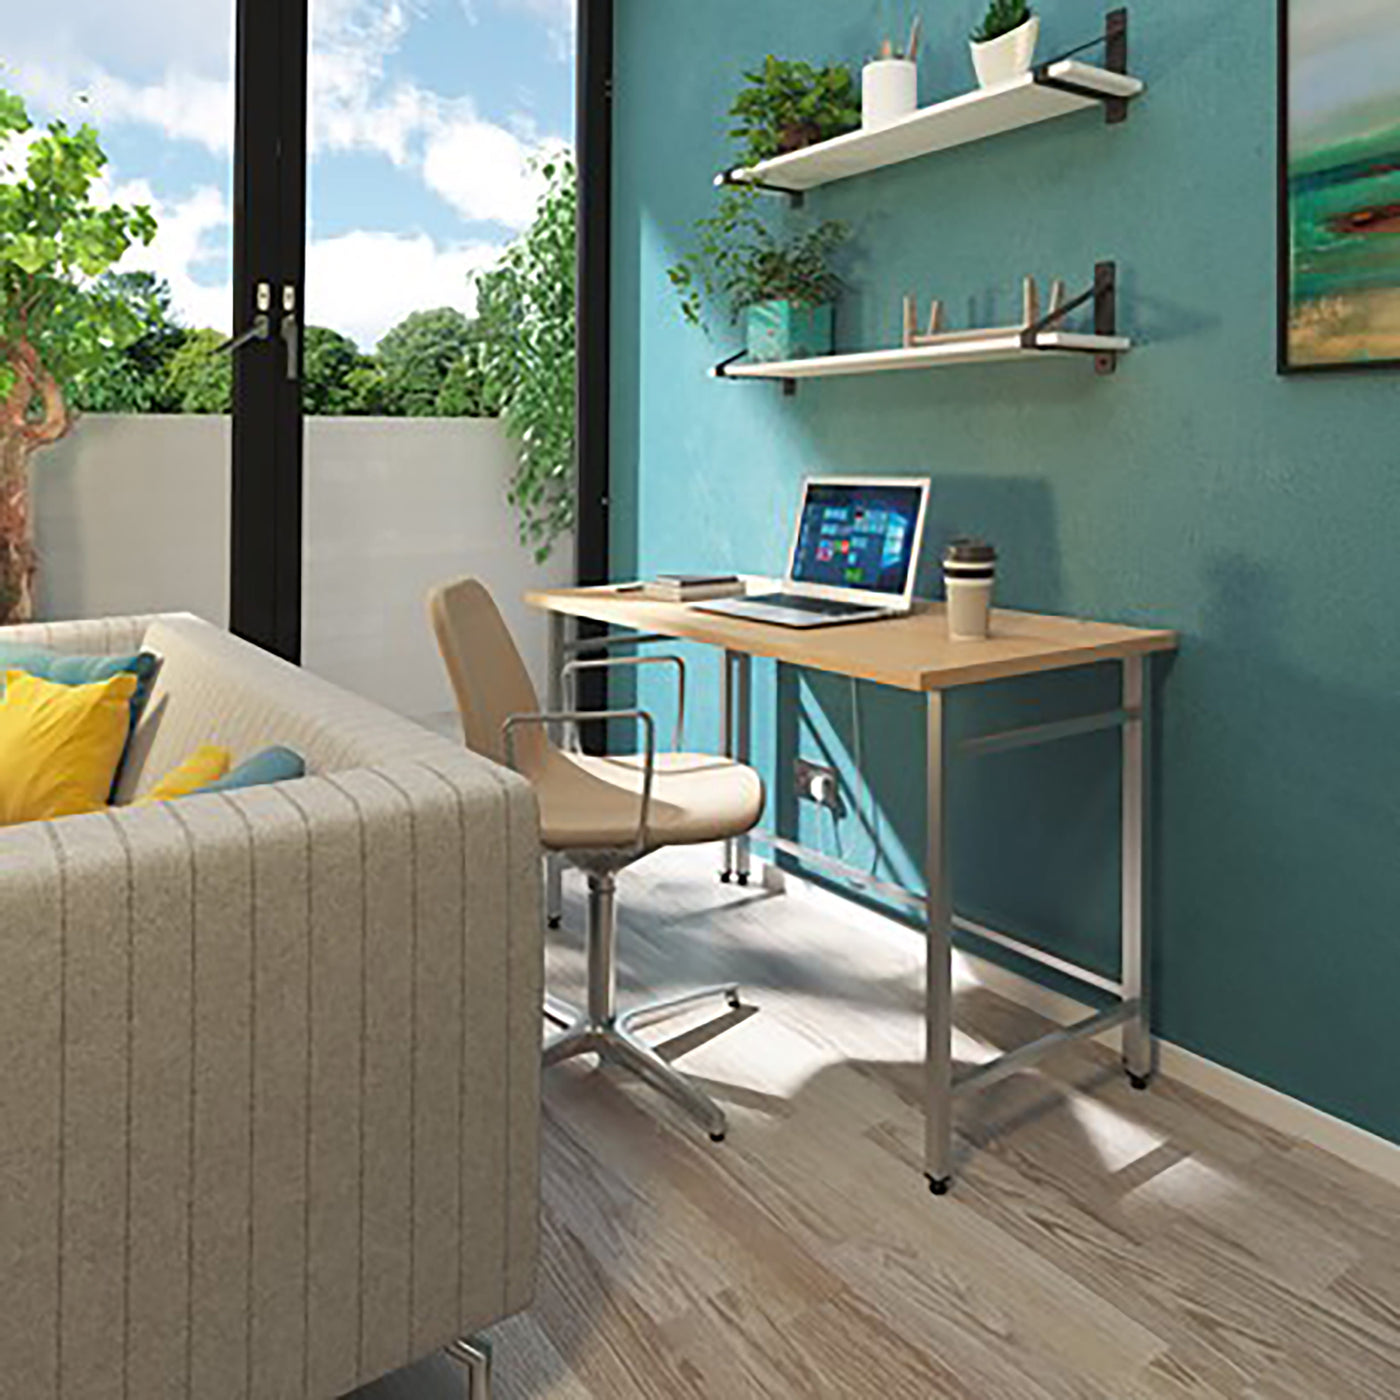 Fuji Home Office Workstation | Foldable Work Desk | Folding Desk | Home Office Furniture | Compact Desk | Metal Frame Desk | Work From Home